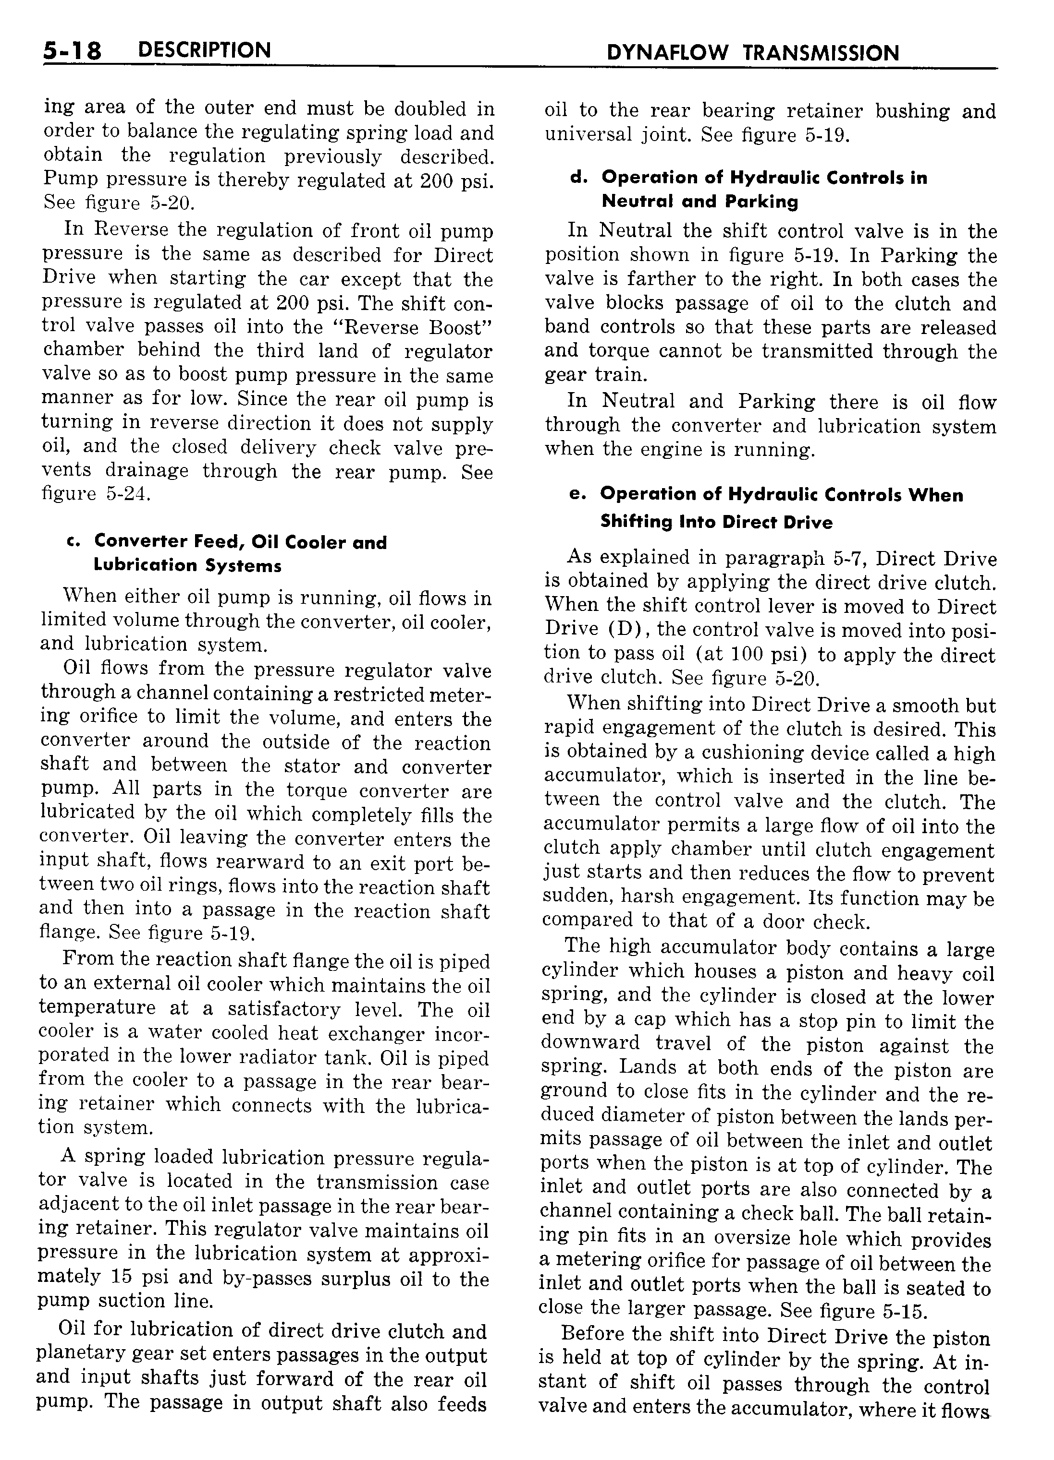 n_06 1957 Buick Shop Manual - Dynaflow-018-018.jpg